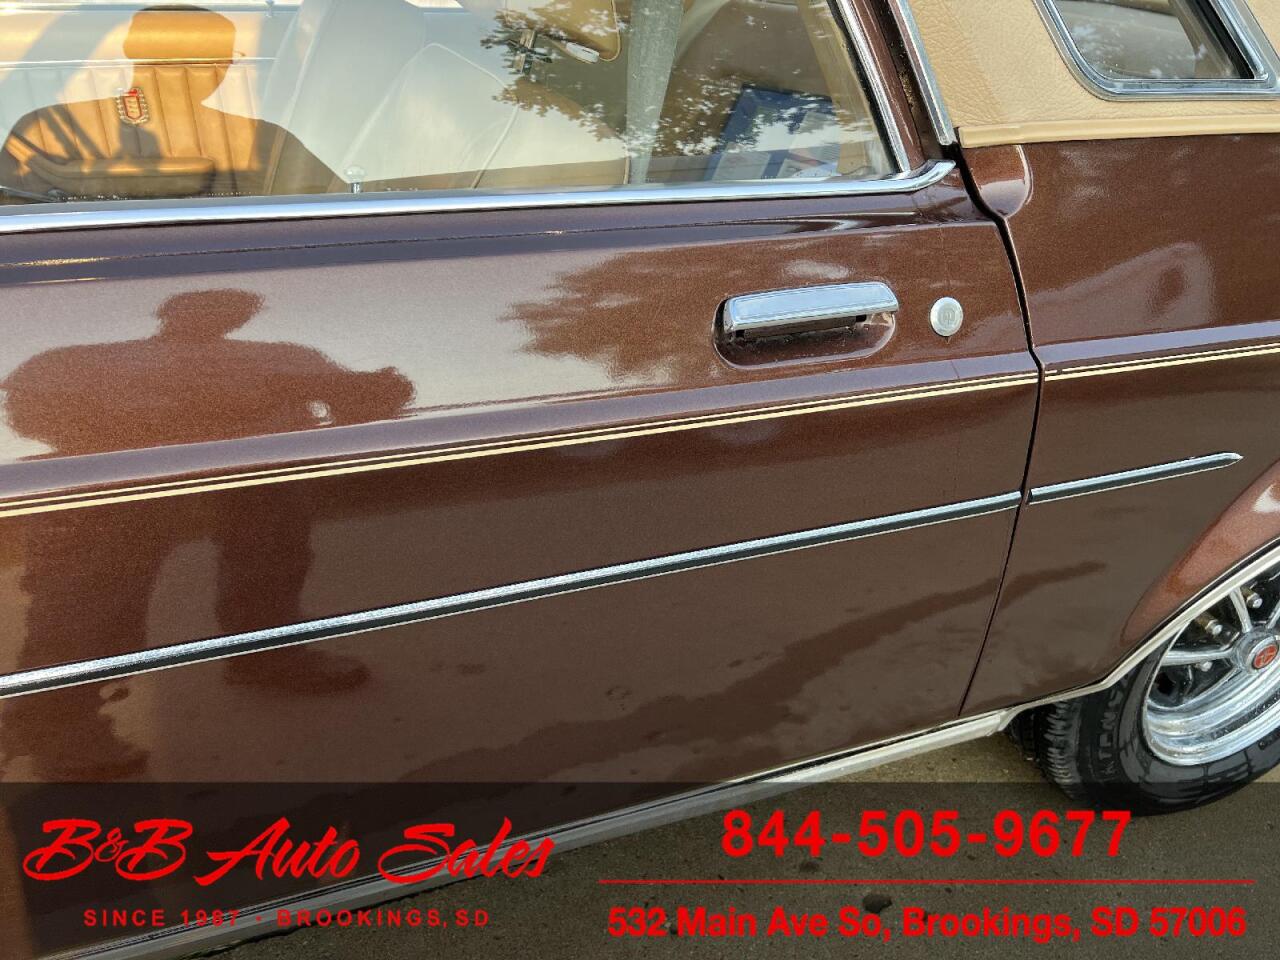 1975 Ford Granada 88